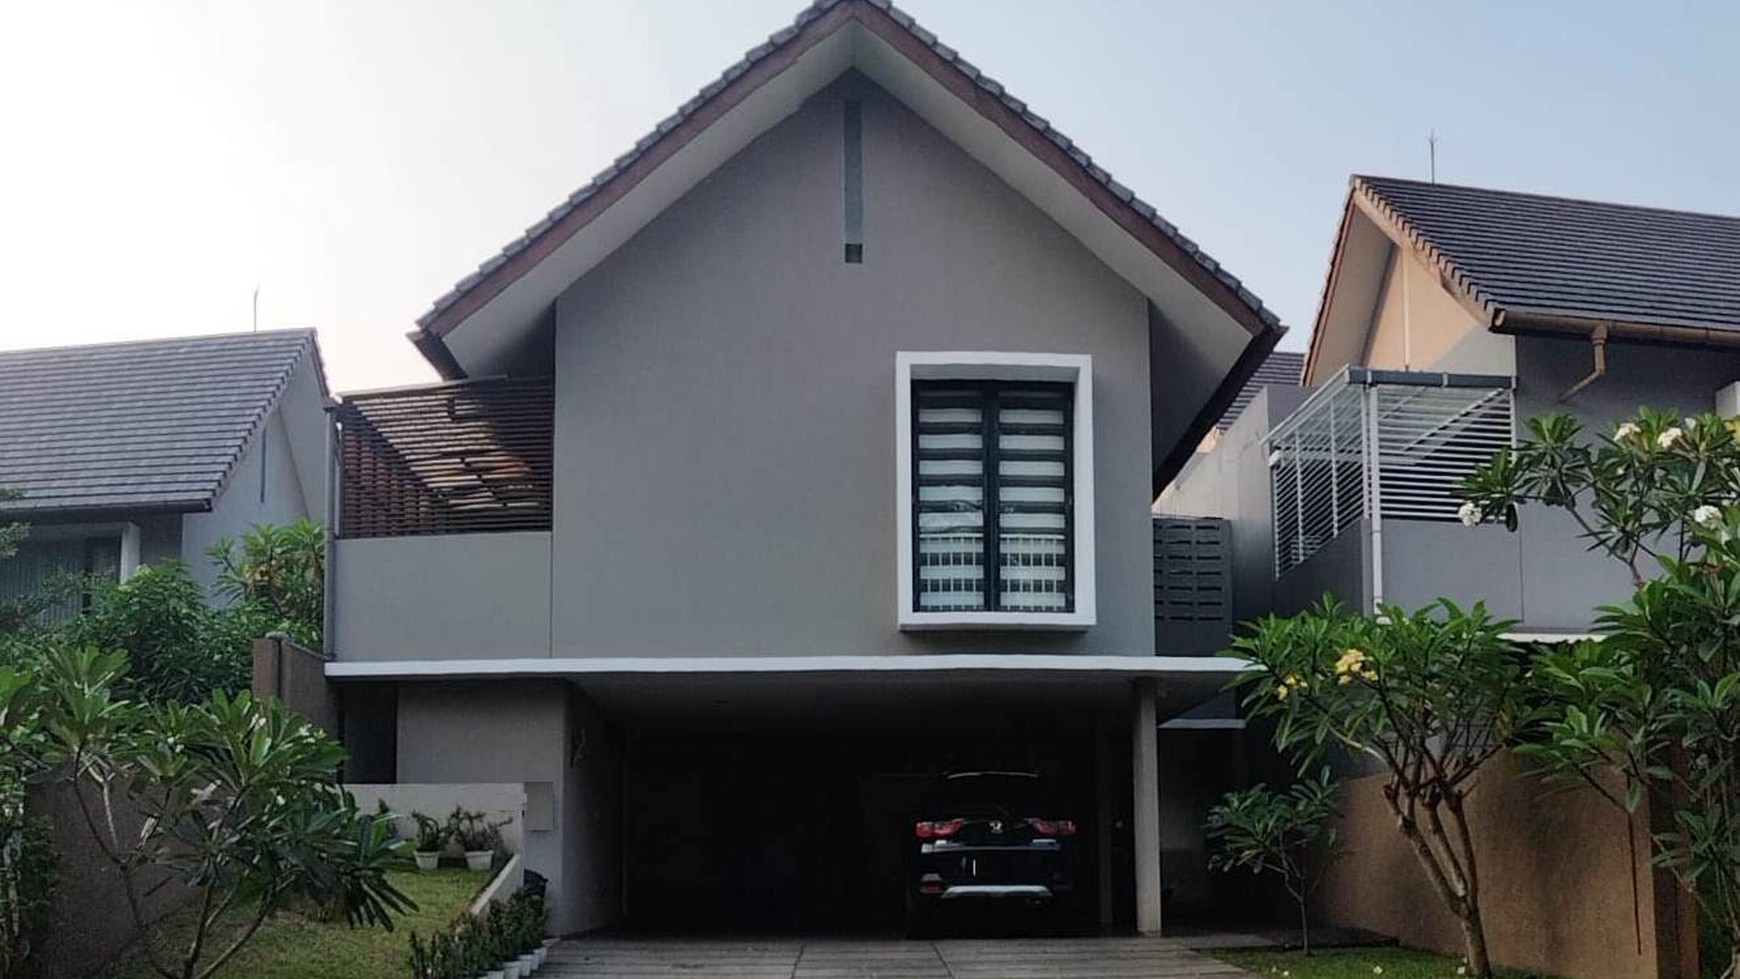 Rumah Bagus Diarea Jl Cempaka Bintaro, Dekat Akses Toll JORR